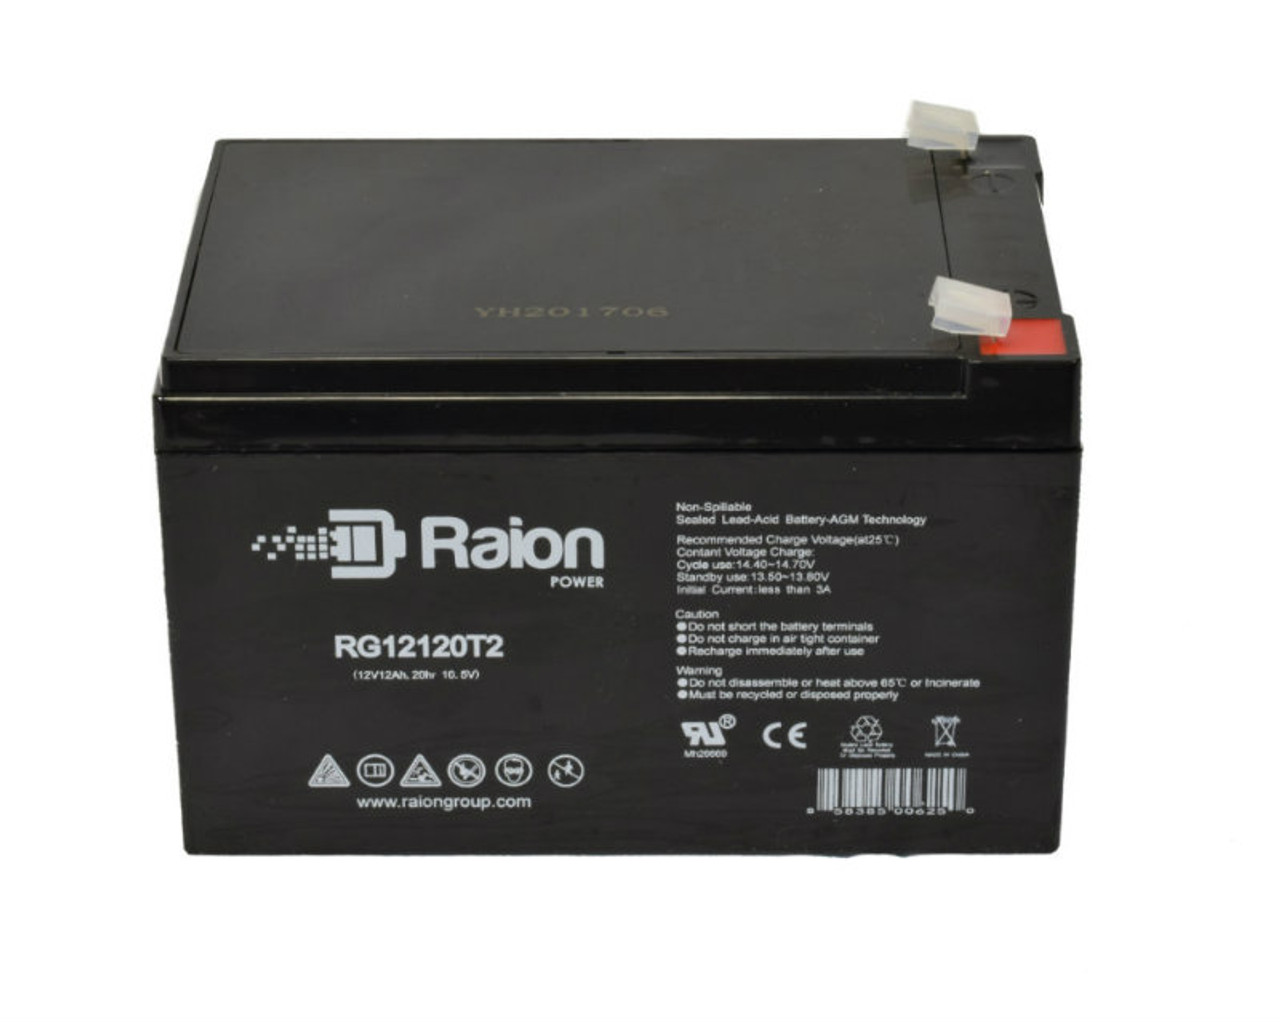 Raion Power RG12120T2 SLA Battery for Vasworld Power GB12-12